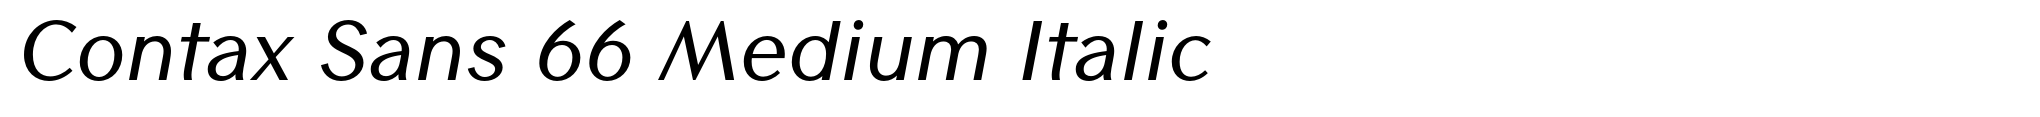 Contax Sans 66 Medium Italic image